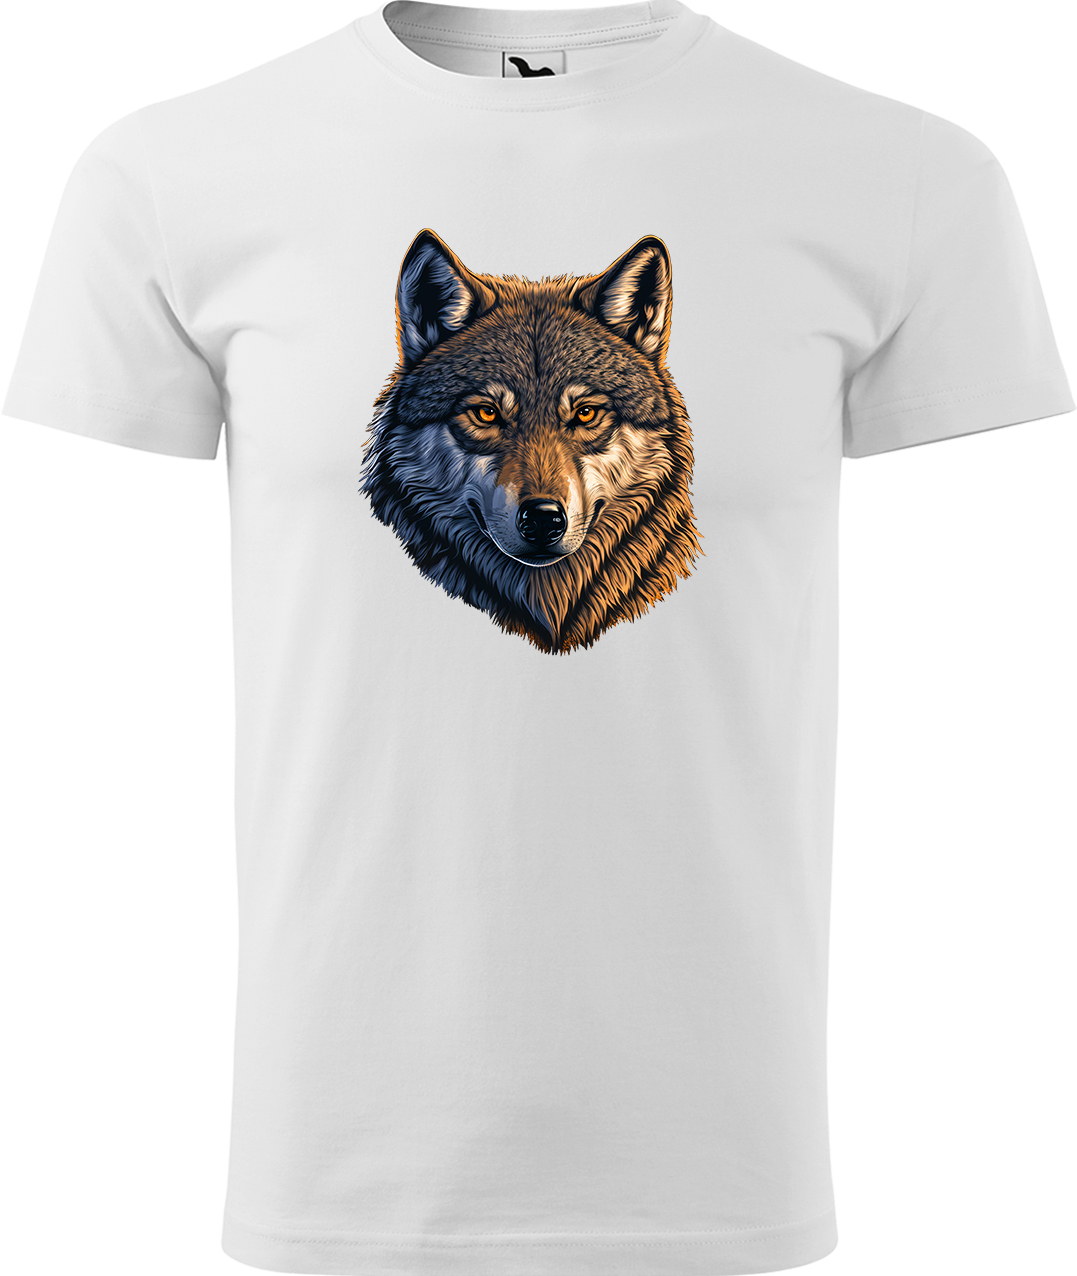 Pánské tričko s vlkem - Hlava vlka Velikost: 3XL, Barva: Bílá (00), Střih: pánský